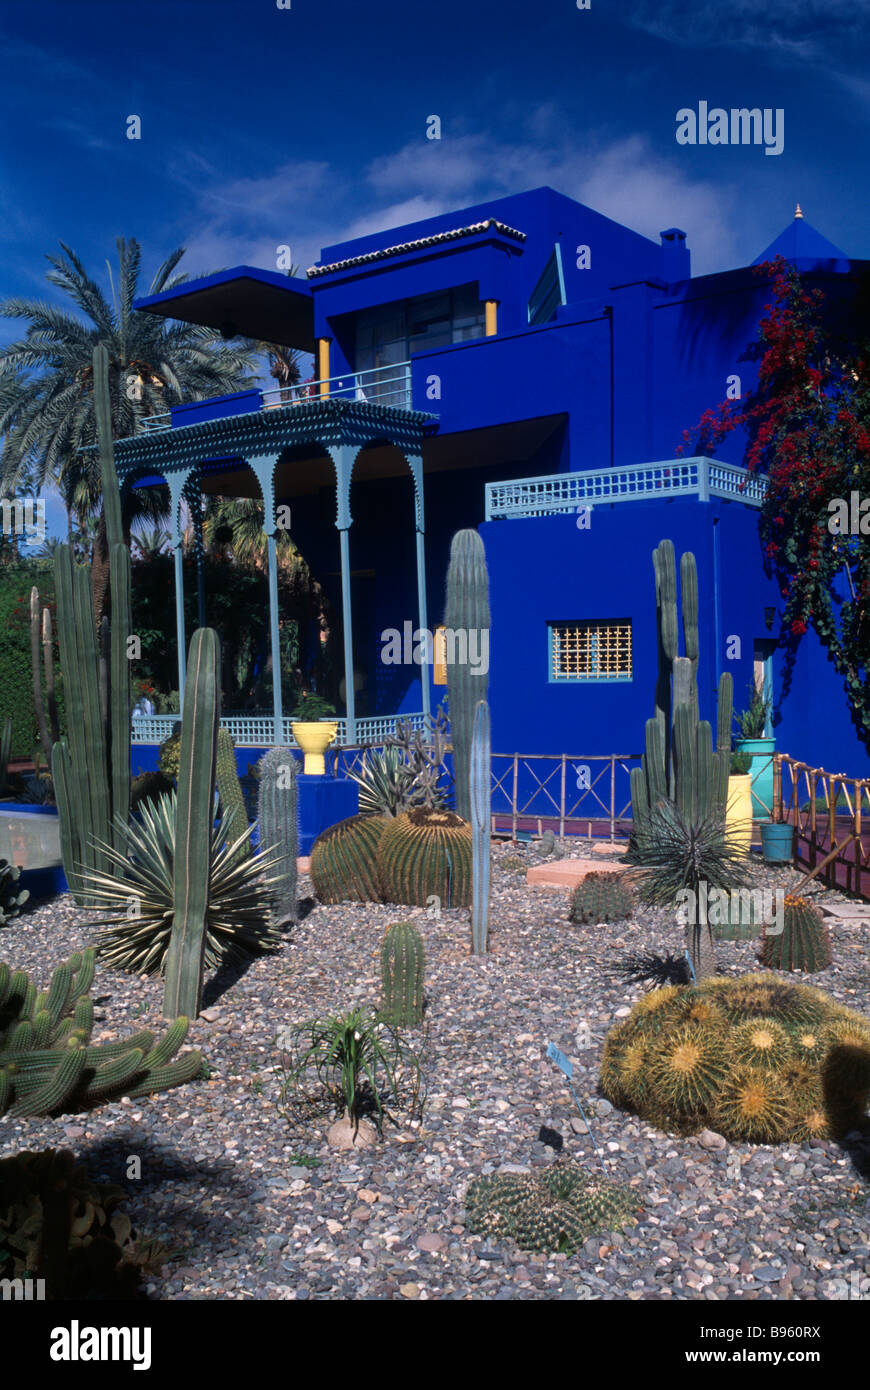 Afrique du Nord Maroc Marrakech Le Jardin Majorelle jardin ornemental avec cactus et palmiers et Colbolt bâtiment bleu Banque D'Images